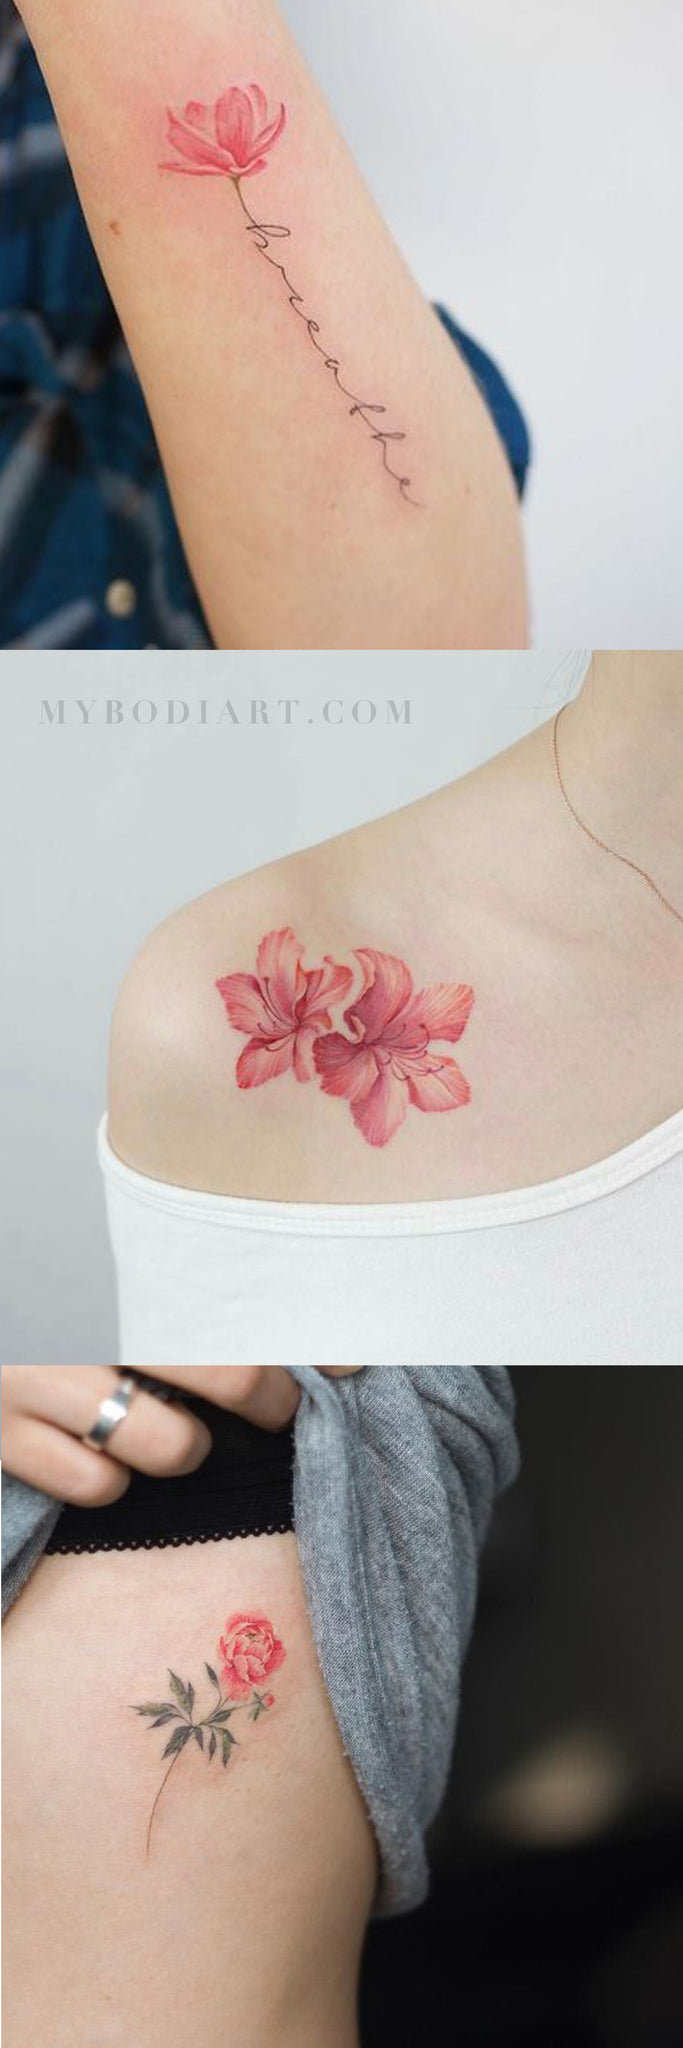 Small Watercolor Coral Shoulder Forearm Rib Tattoo Ideas for Women -  ideas hermosas del tatuaje de la flor floral coralina de la acuarela para las mujeres - www.MyBodiArt.com